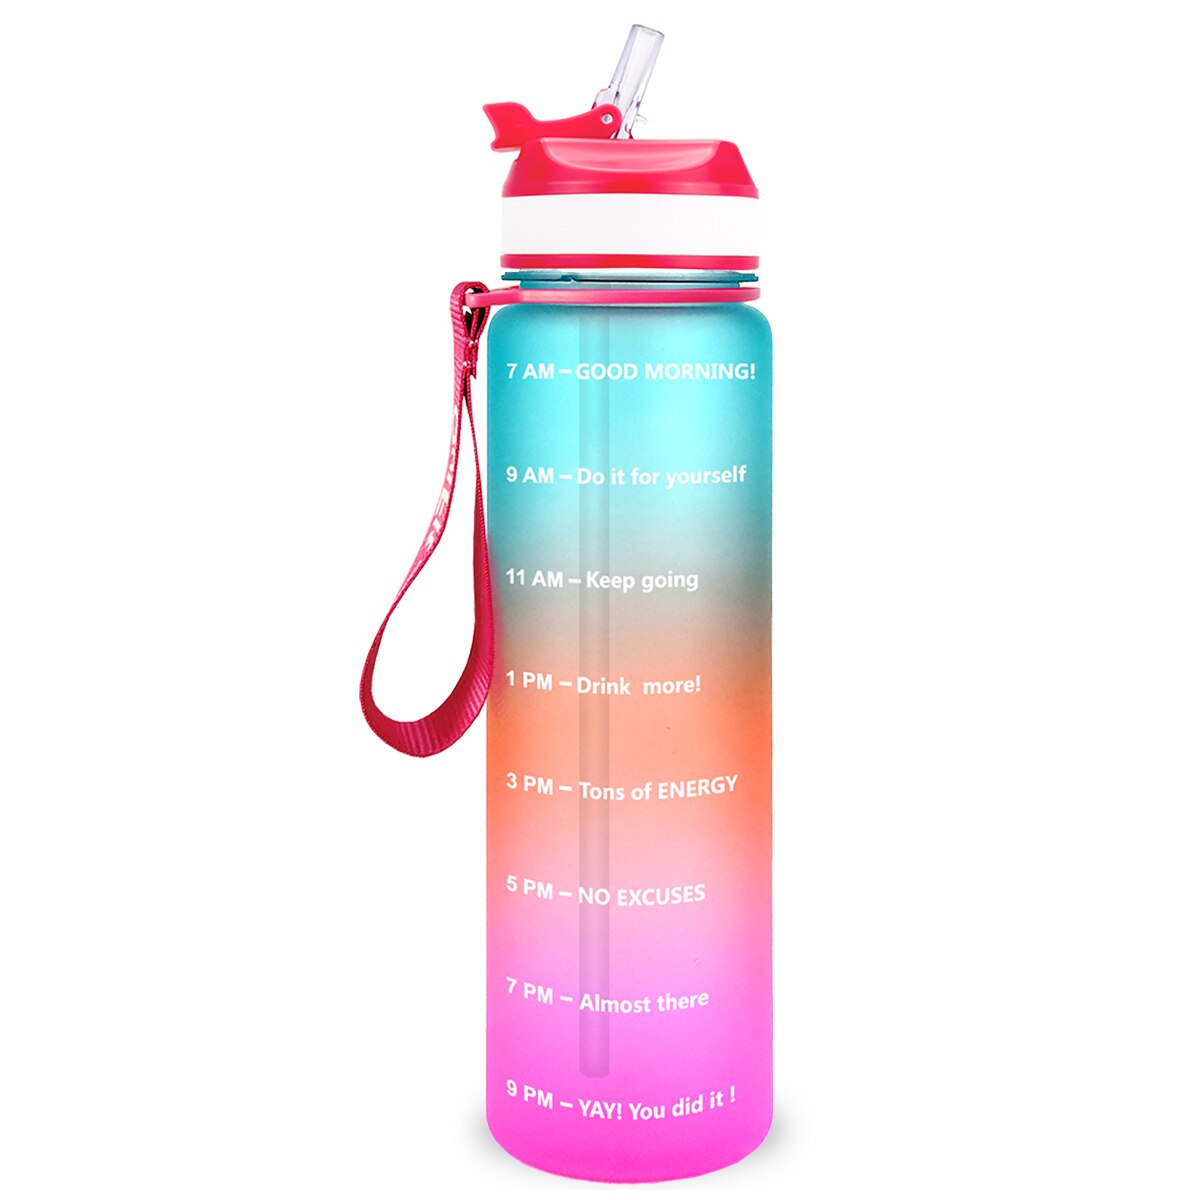 Eine orange-blaue-pinke Sporttrinkflasche mit einer Zeitmarkierungen sowie motivierenden Spruechen für verschiedene Tageszeiten. Die Flasche hat eine rote Trageschlaufe und einen Deckel mit einem aufklappbaren Trinkverschluss.